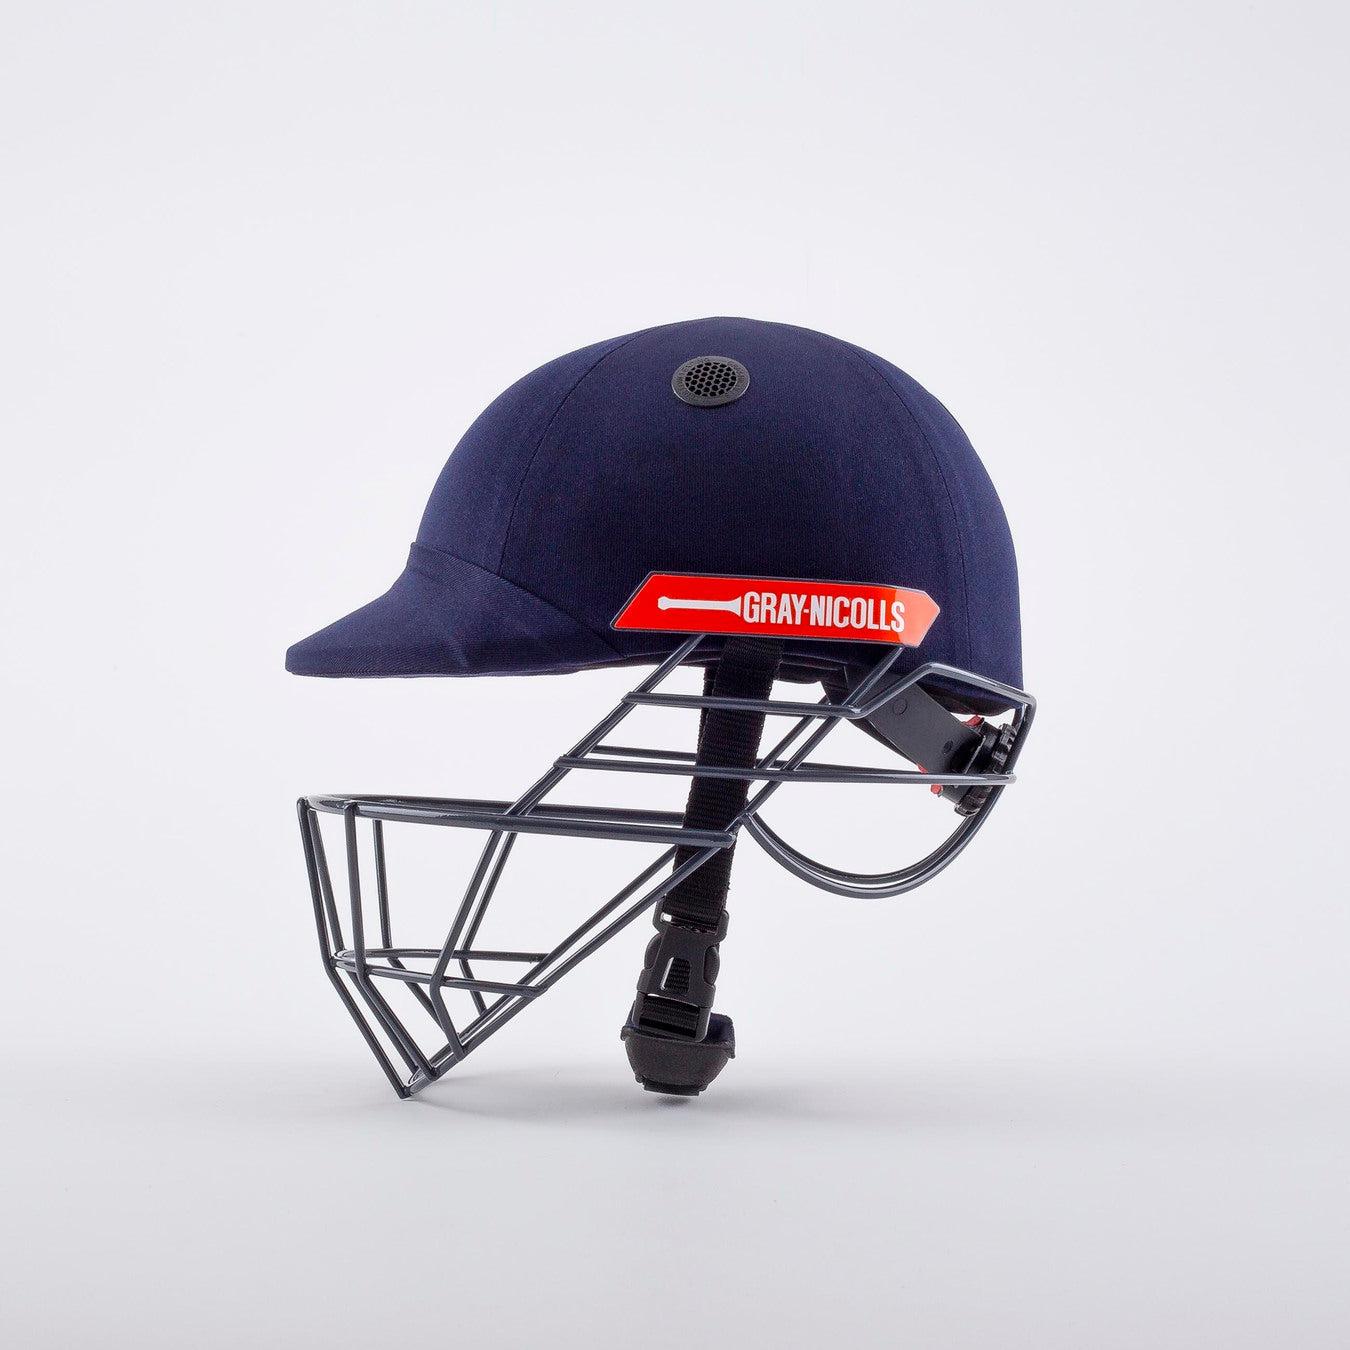 Gray-Nicolls Atomic 360 Cricket Helmet Senior-Bruntsfield Sports Online